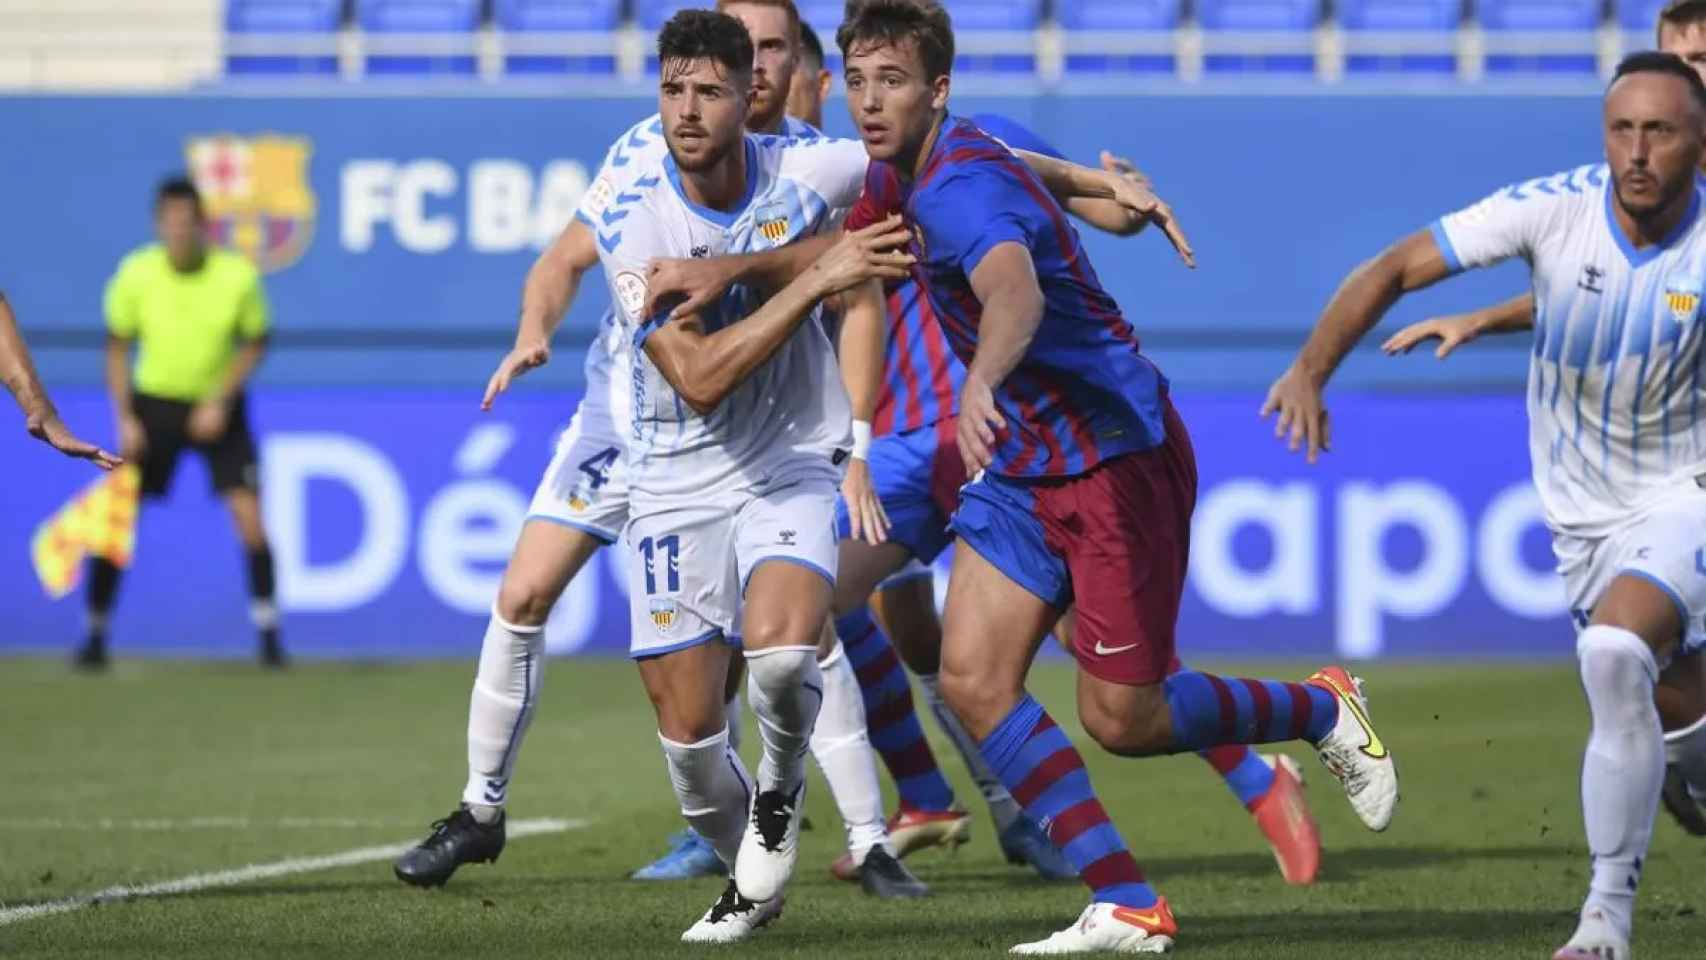 Imagen del partido entre el FC Barcelona y el Costa Brava